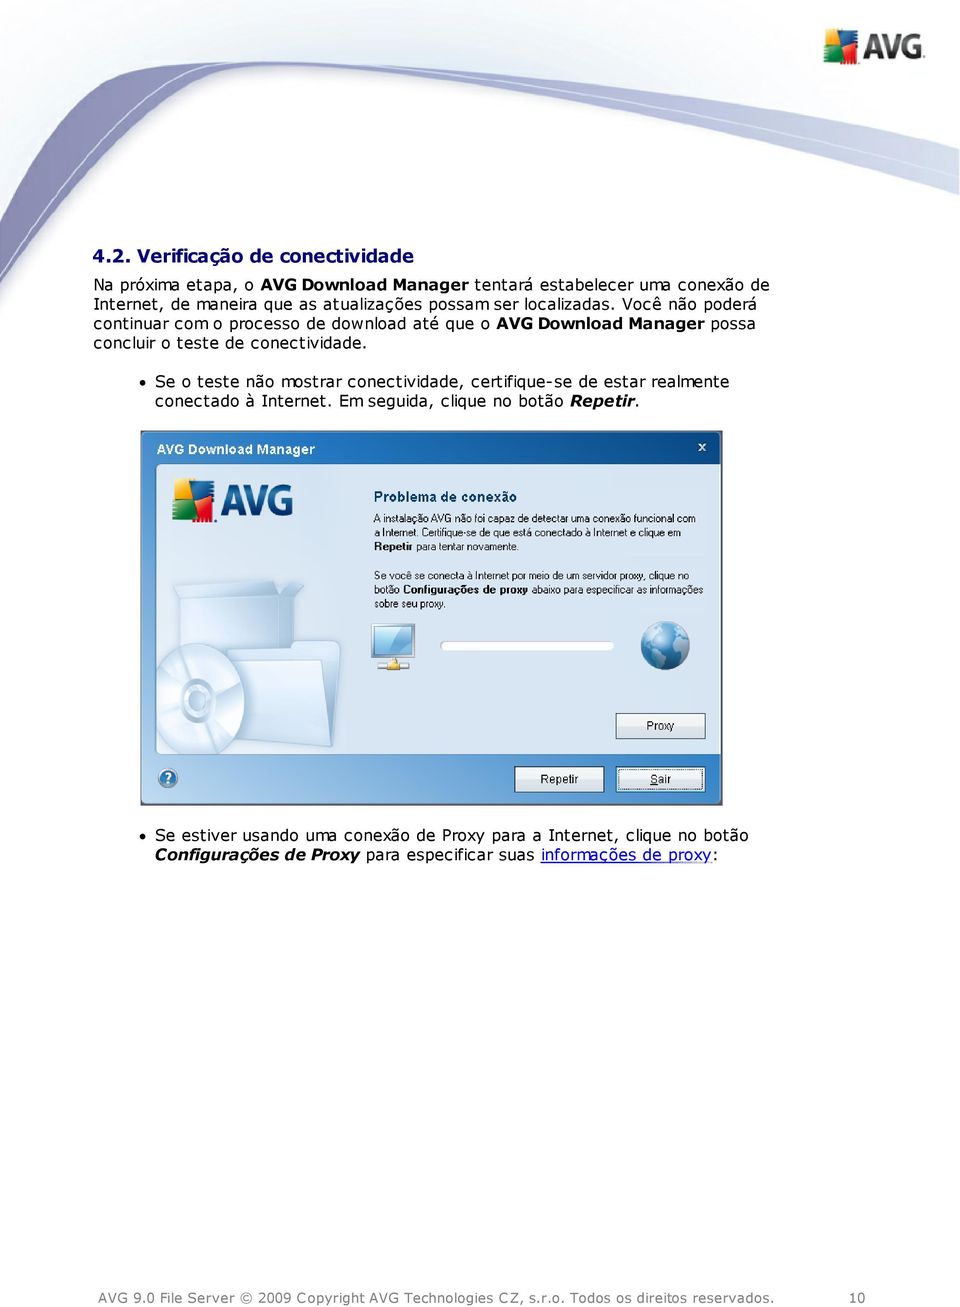 Você não poderá continuar com o processo de download até que o AVG Download Manager possa concluir o teste de conectividade.